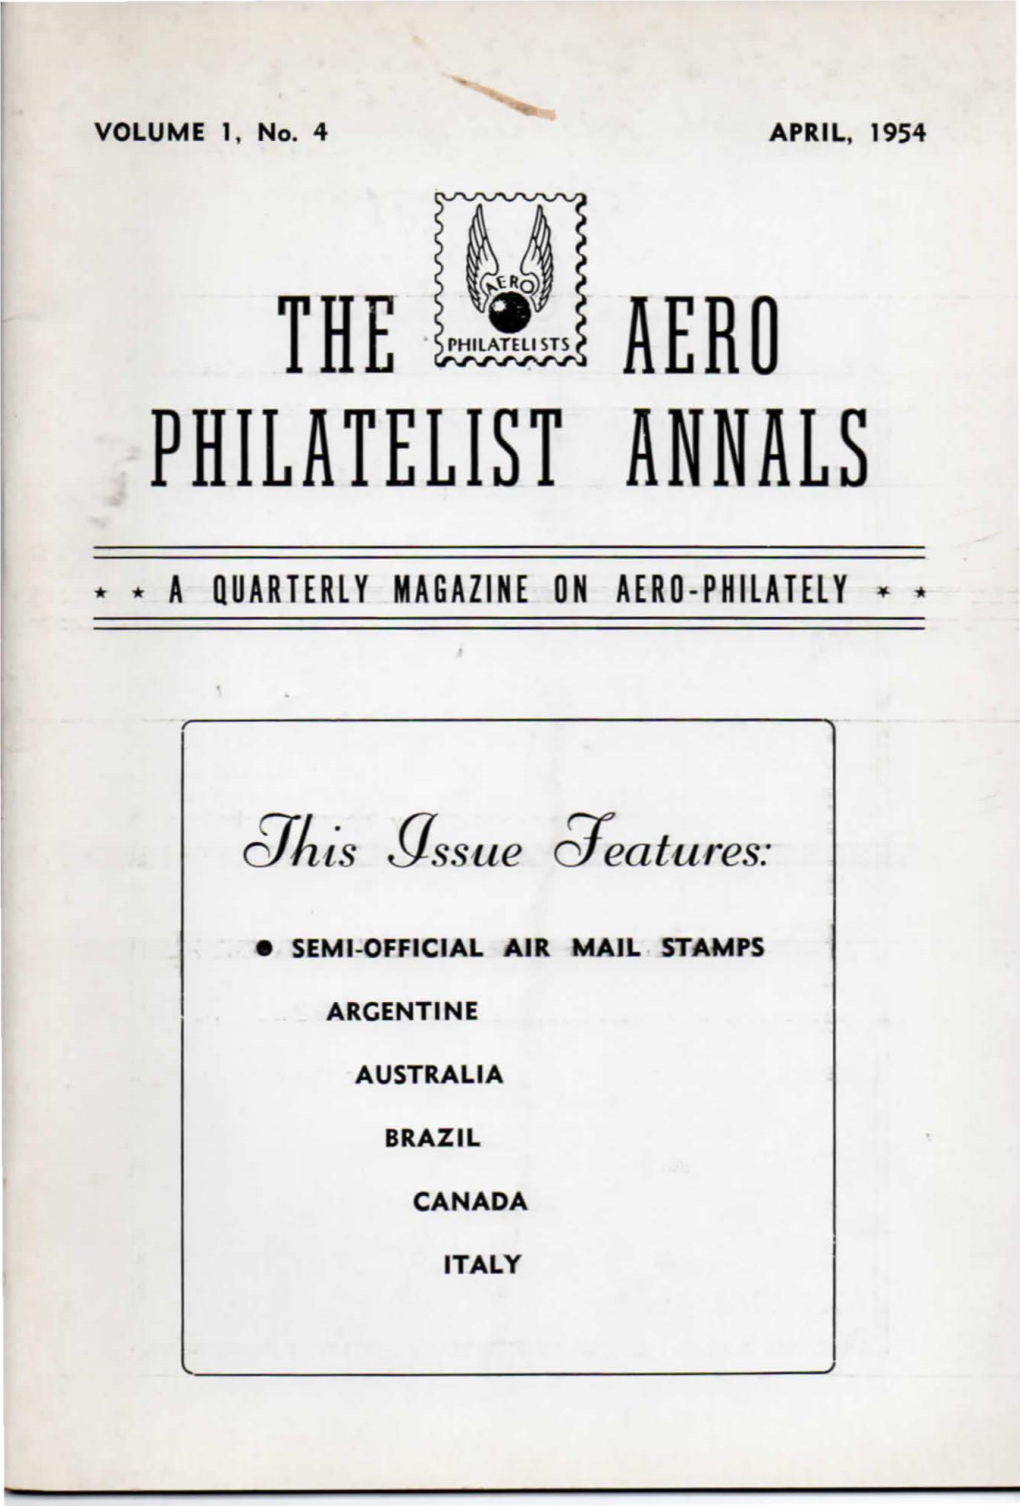 Vol. 1, Issue No. 4, April 1954